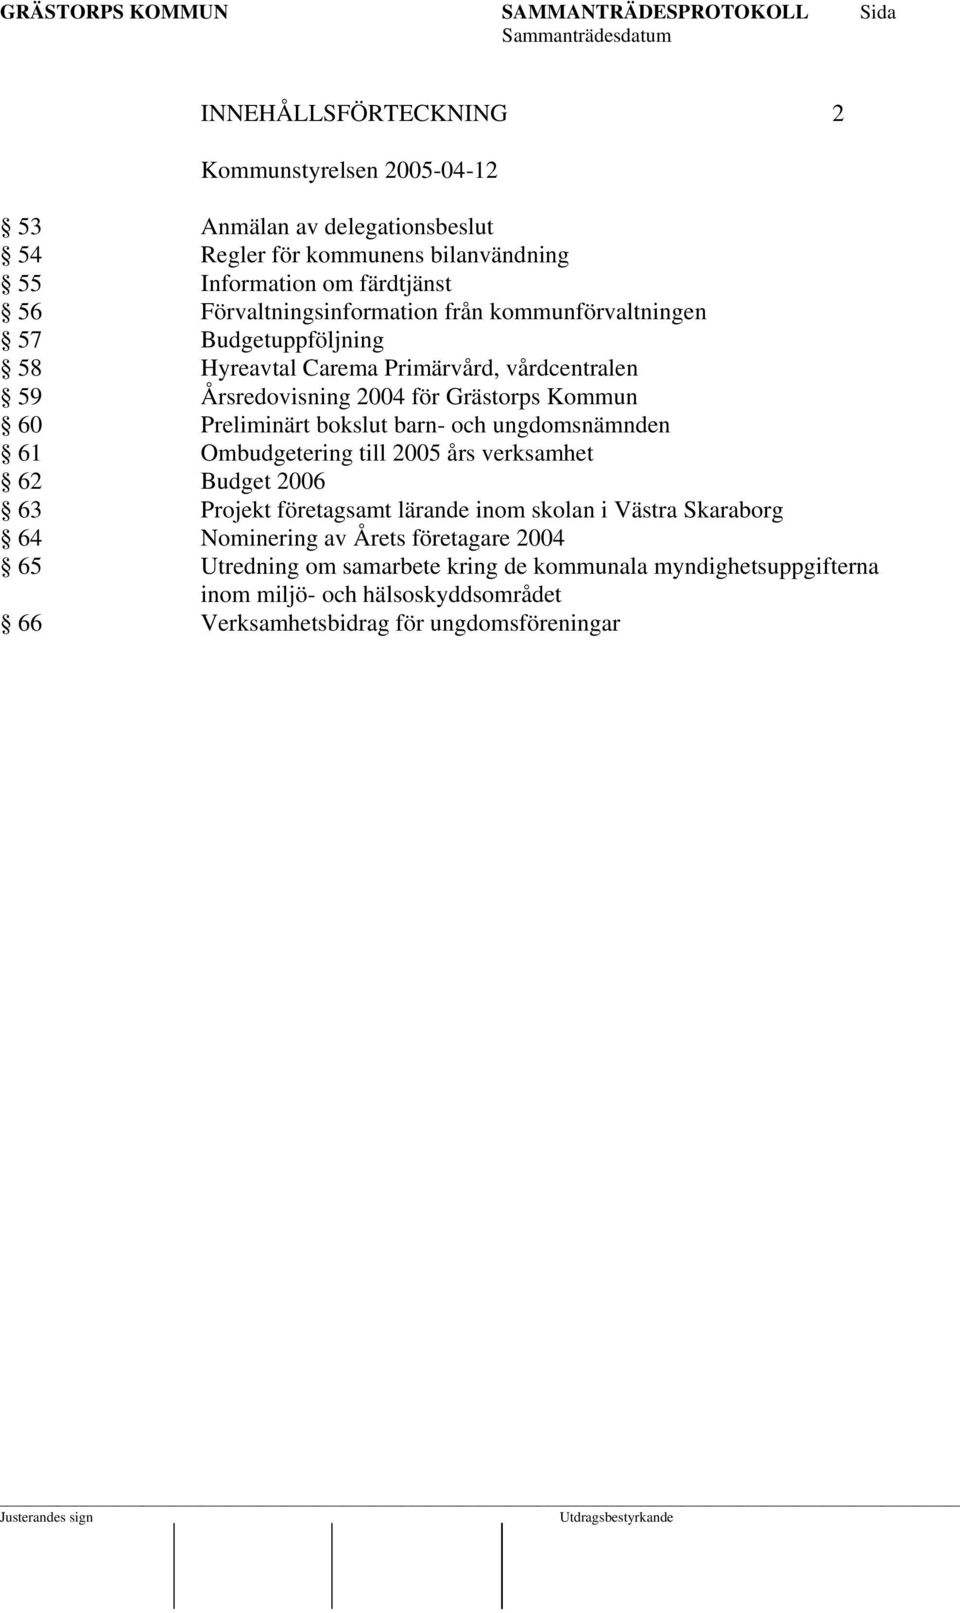 Preliminärt bokslut barn- och ungdomsnämnden 61 Ombudgetering till 2005 års verksamhet 62 Budget 2006 63 Projekt företagsamt lärande inom skolan i Västra Skaraborg